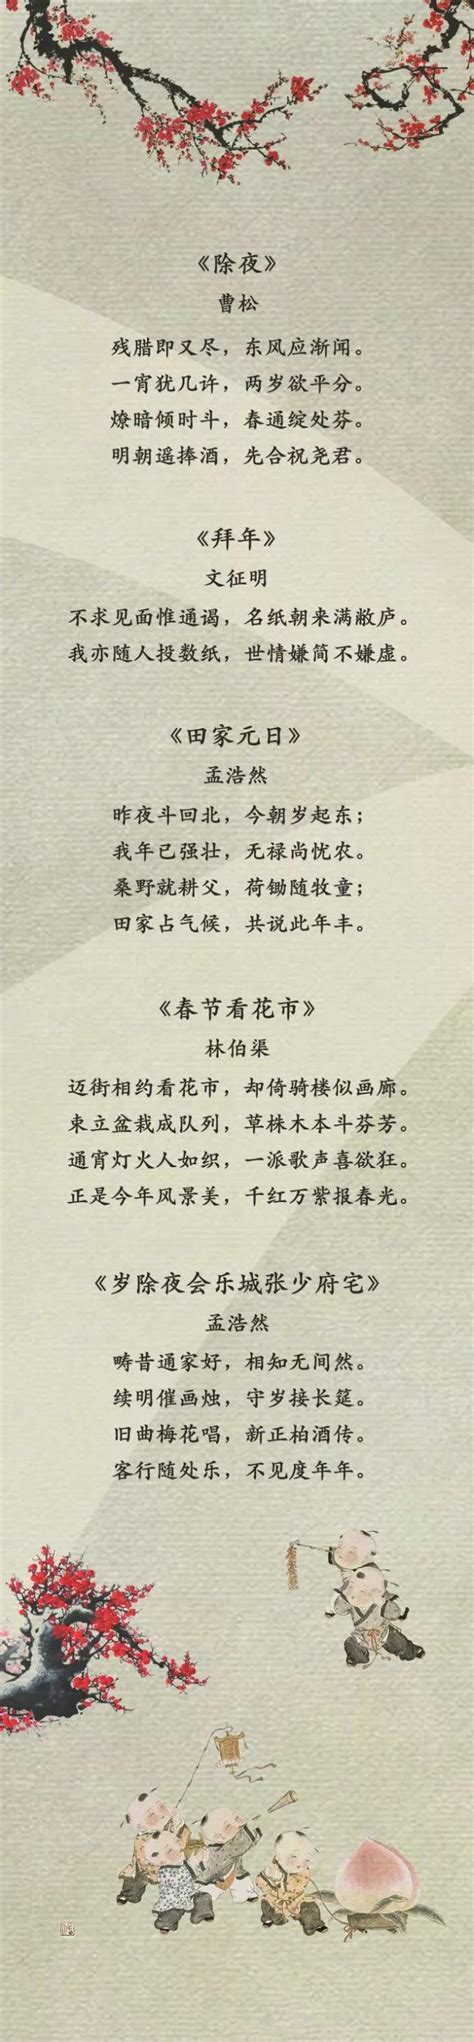 春节现代诗